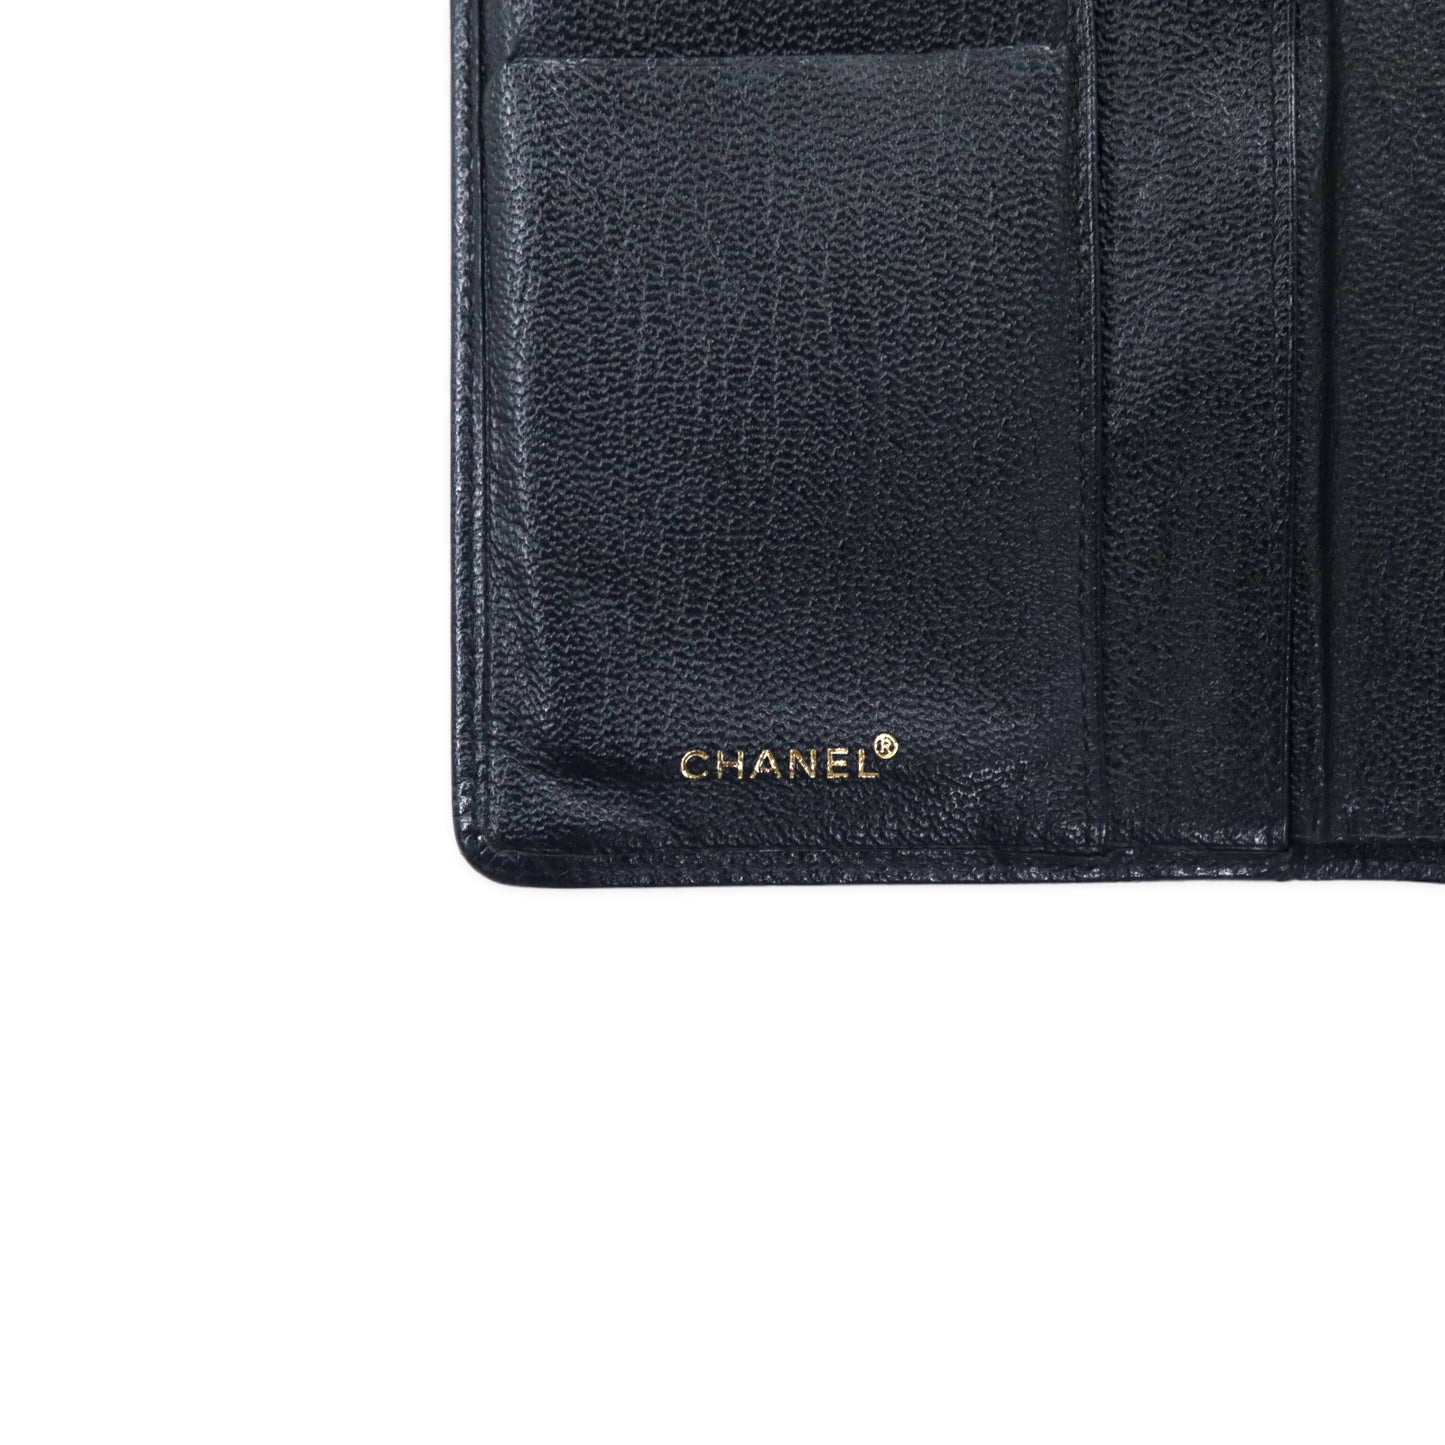 CHANEL セブルガ キャビアスキン 長財布 ブラック レザー ココマーク A68706 フランス製